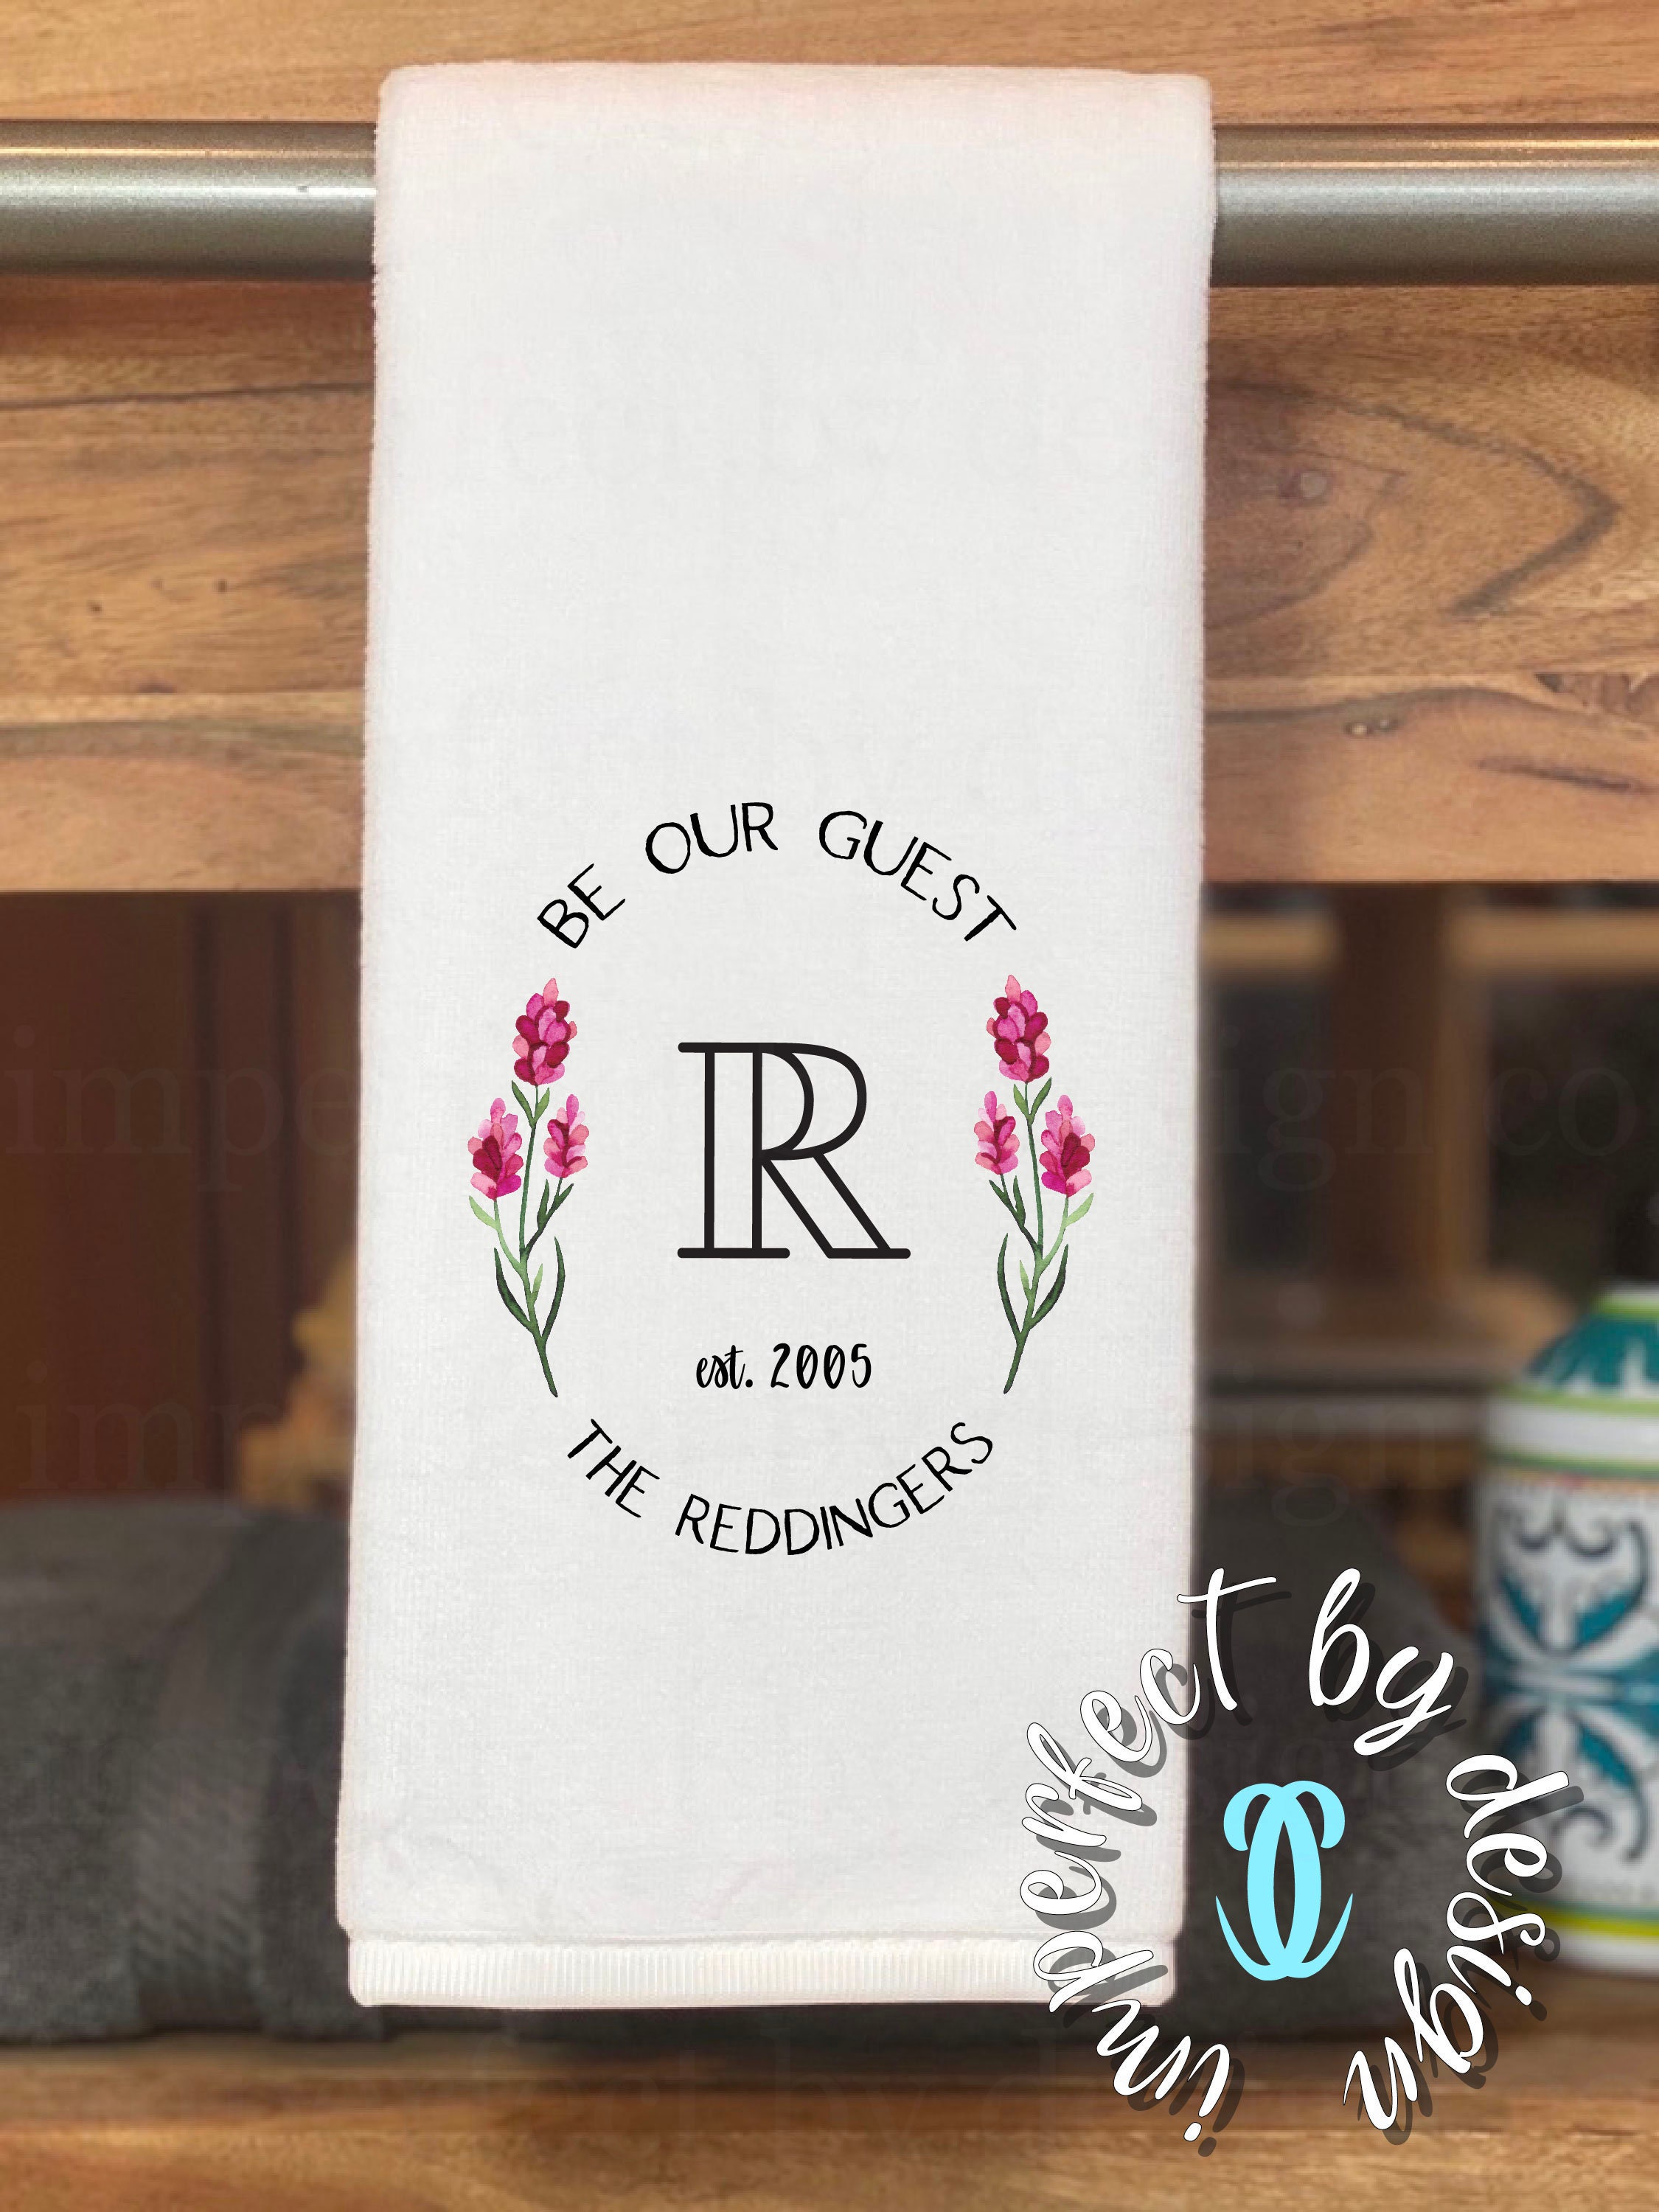 Guest Plush Hand Towel / Guest Hand Towels / Cute Guest Bathroom Décor / Cute  Kitchen Décor / Cute Guest Home Décor / Cute Airbnb Décor 